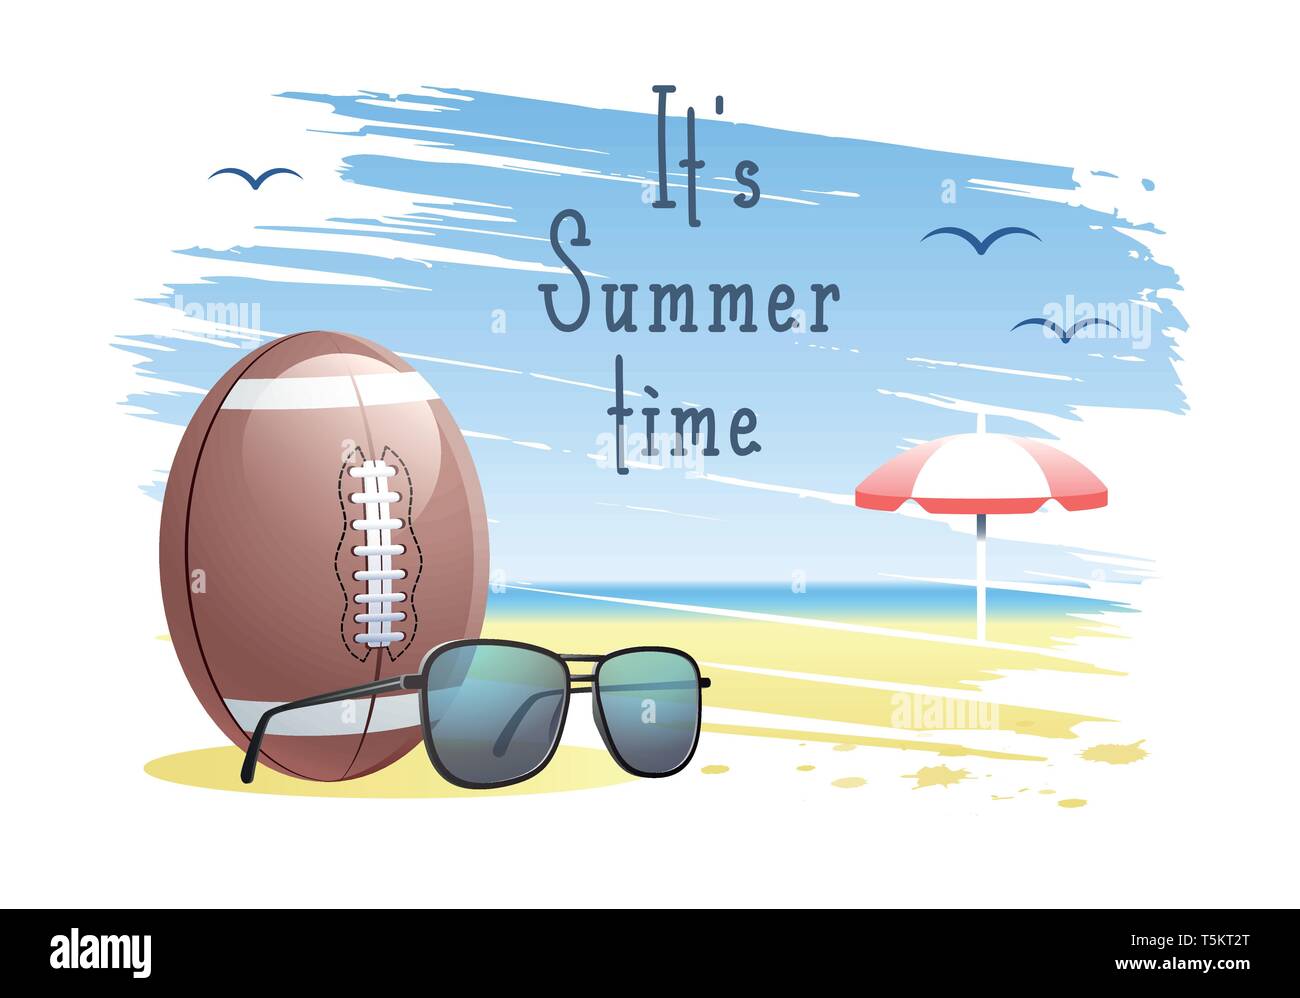 Es la hora de verano. La tarjeta de los deportes. Balón de fútbol americano con gafas de sol y sombrillas en la playa de arena de fondo. Ilustración vectorial. Ilustración del Vector